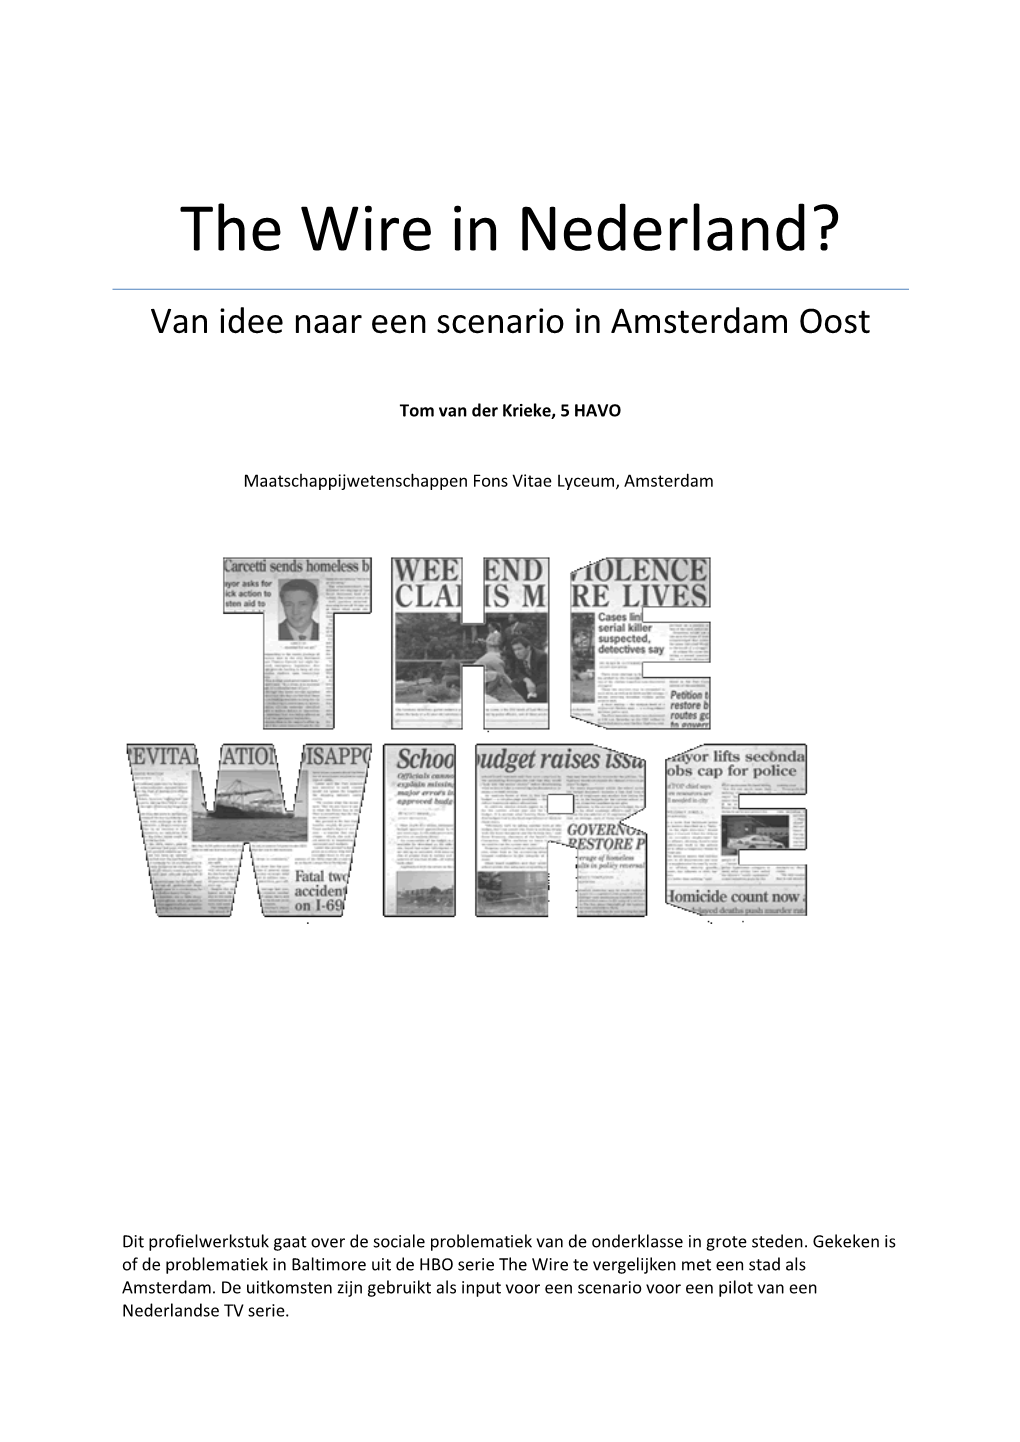 The Wire in Nederland? Van Idee Naar Een Scenario in Amsterdam Oost